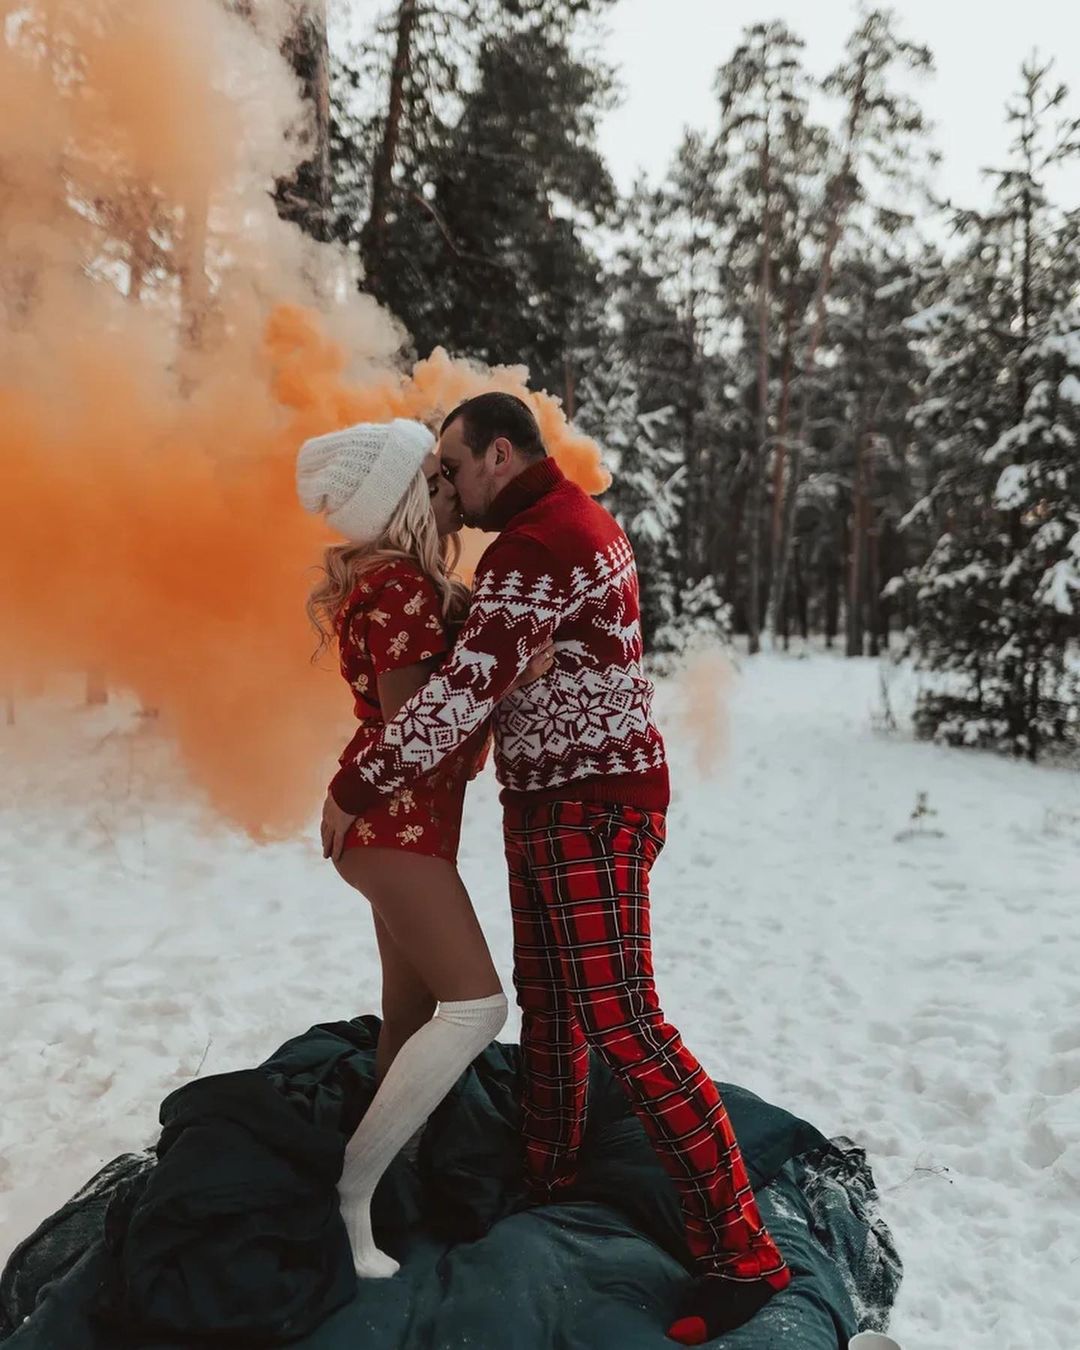 Мороз не повод, чтобы отложить фотосессию! Владимирцы разделись на холоде, чтобы сделать крутые снимки.